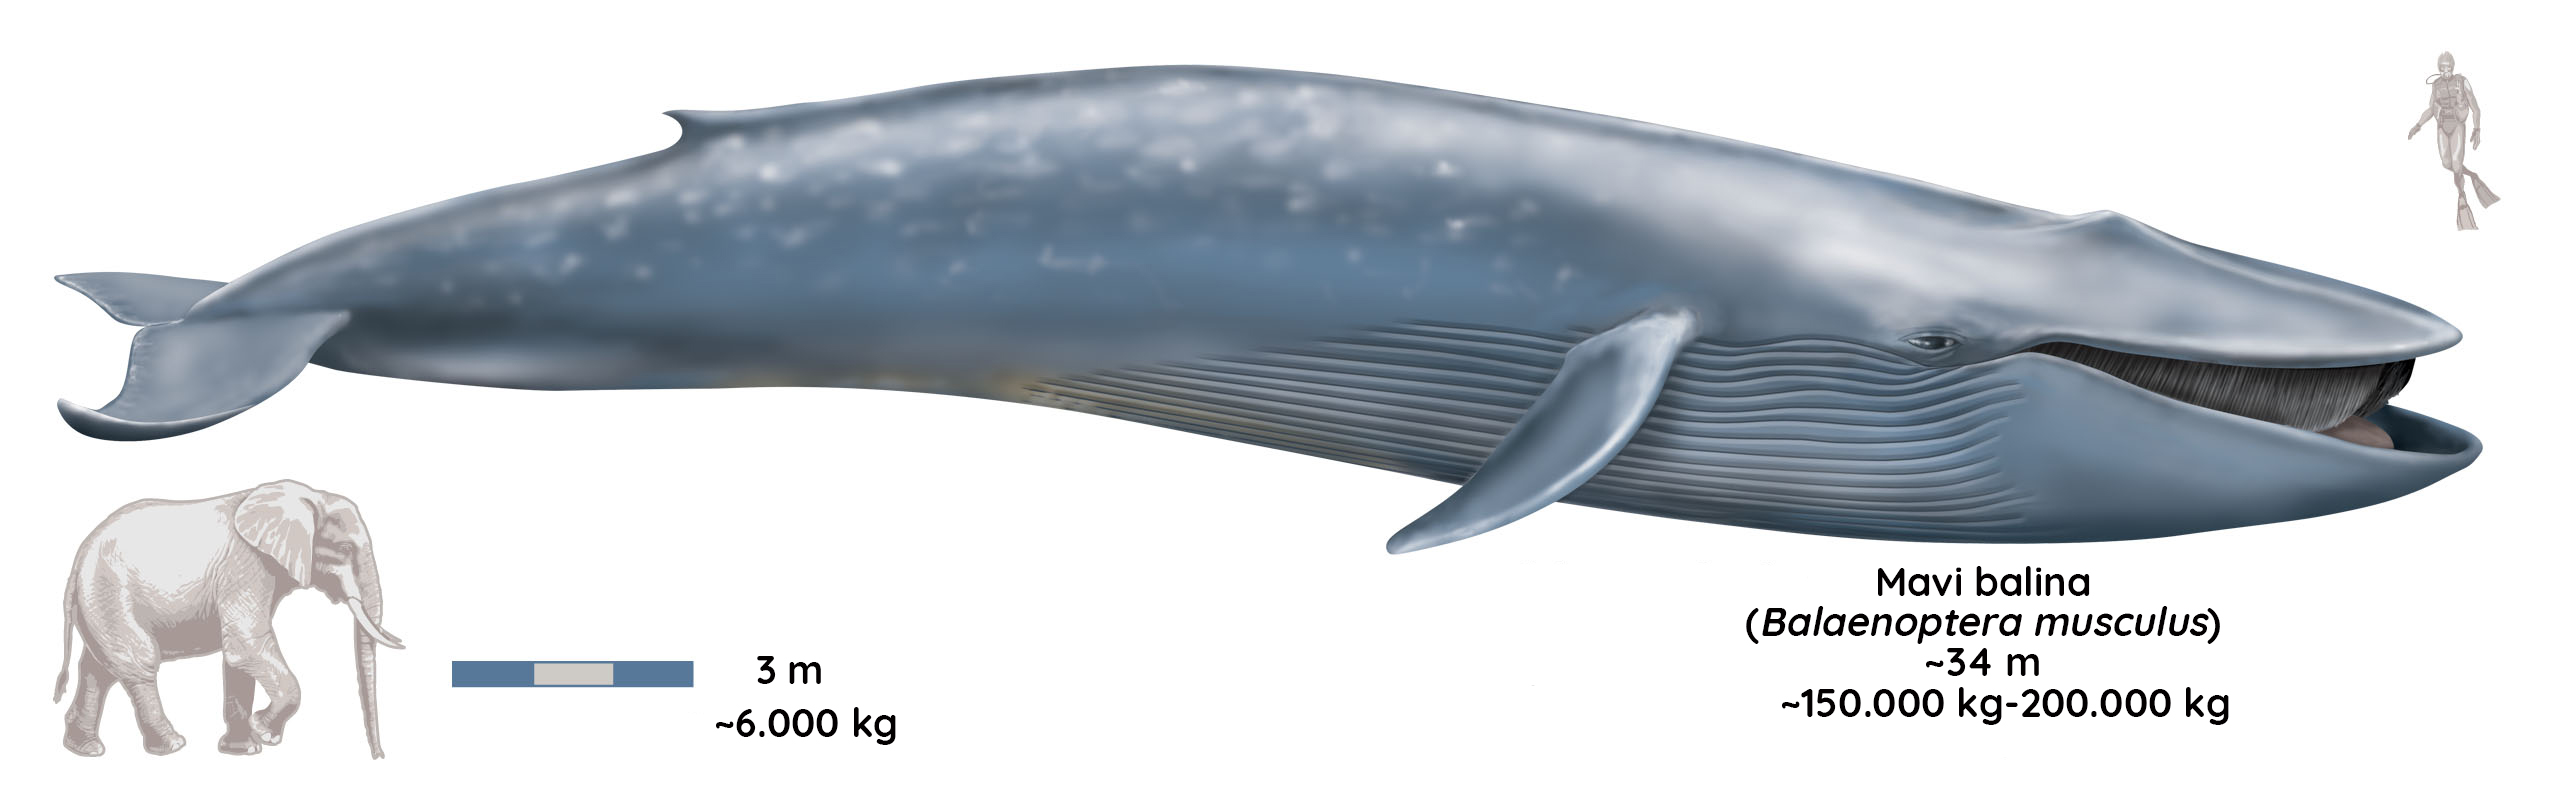 mavi balinalar 200 tona ulaşabilir